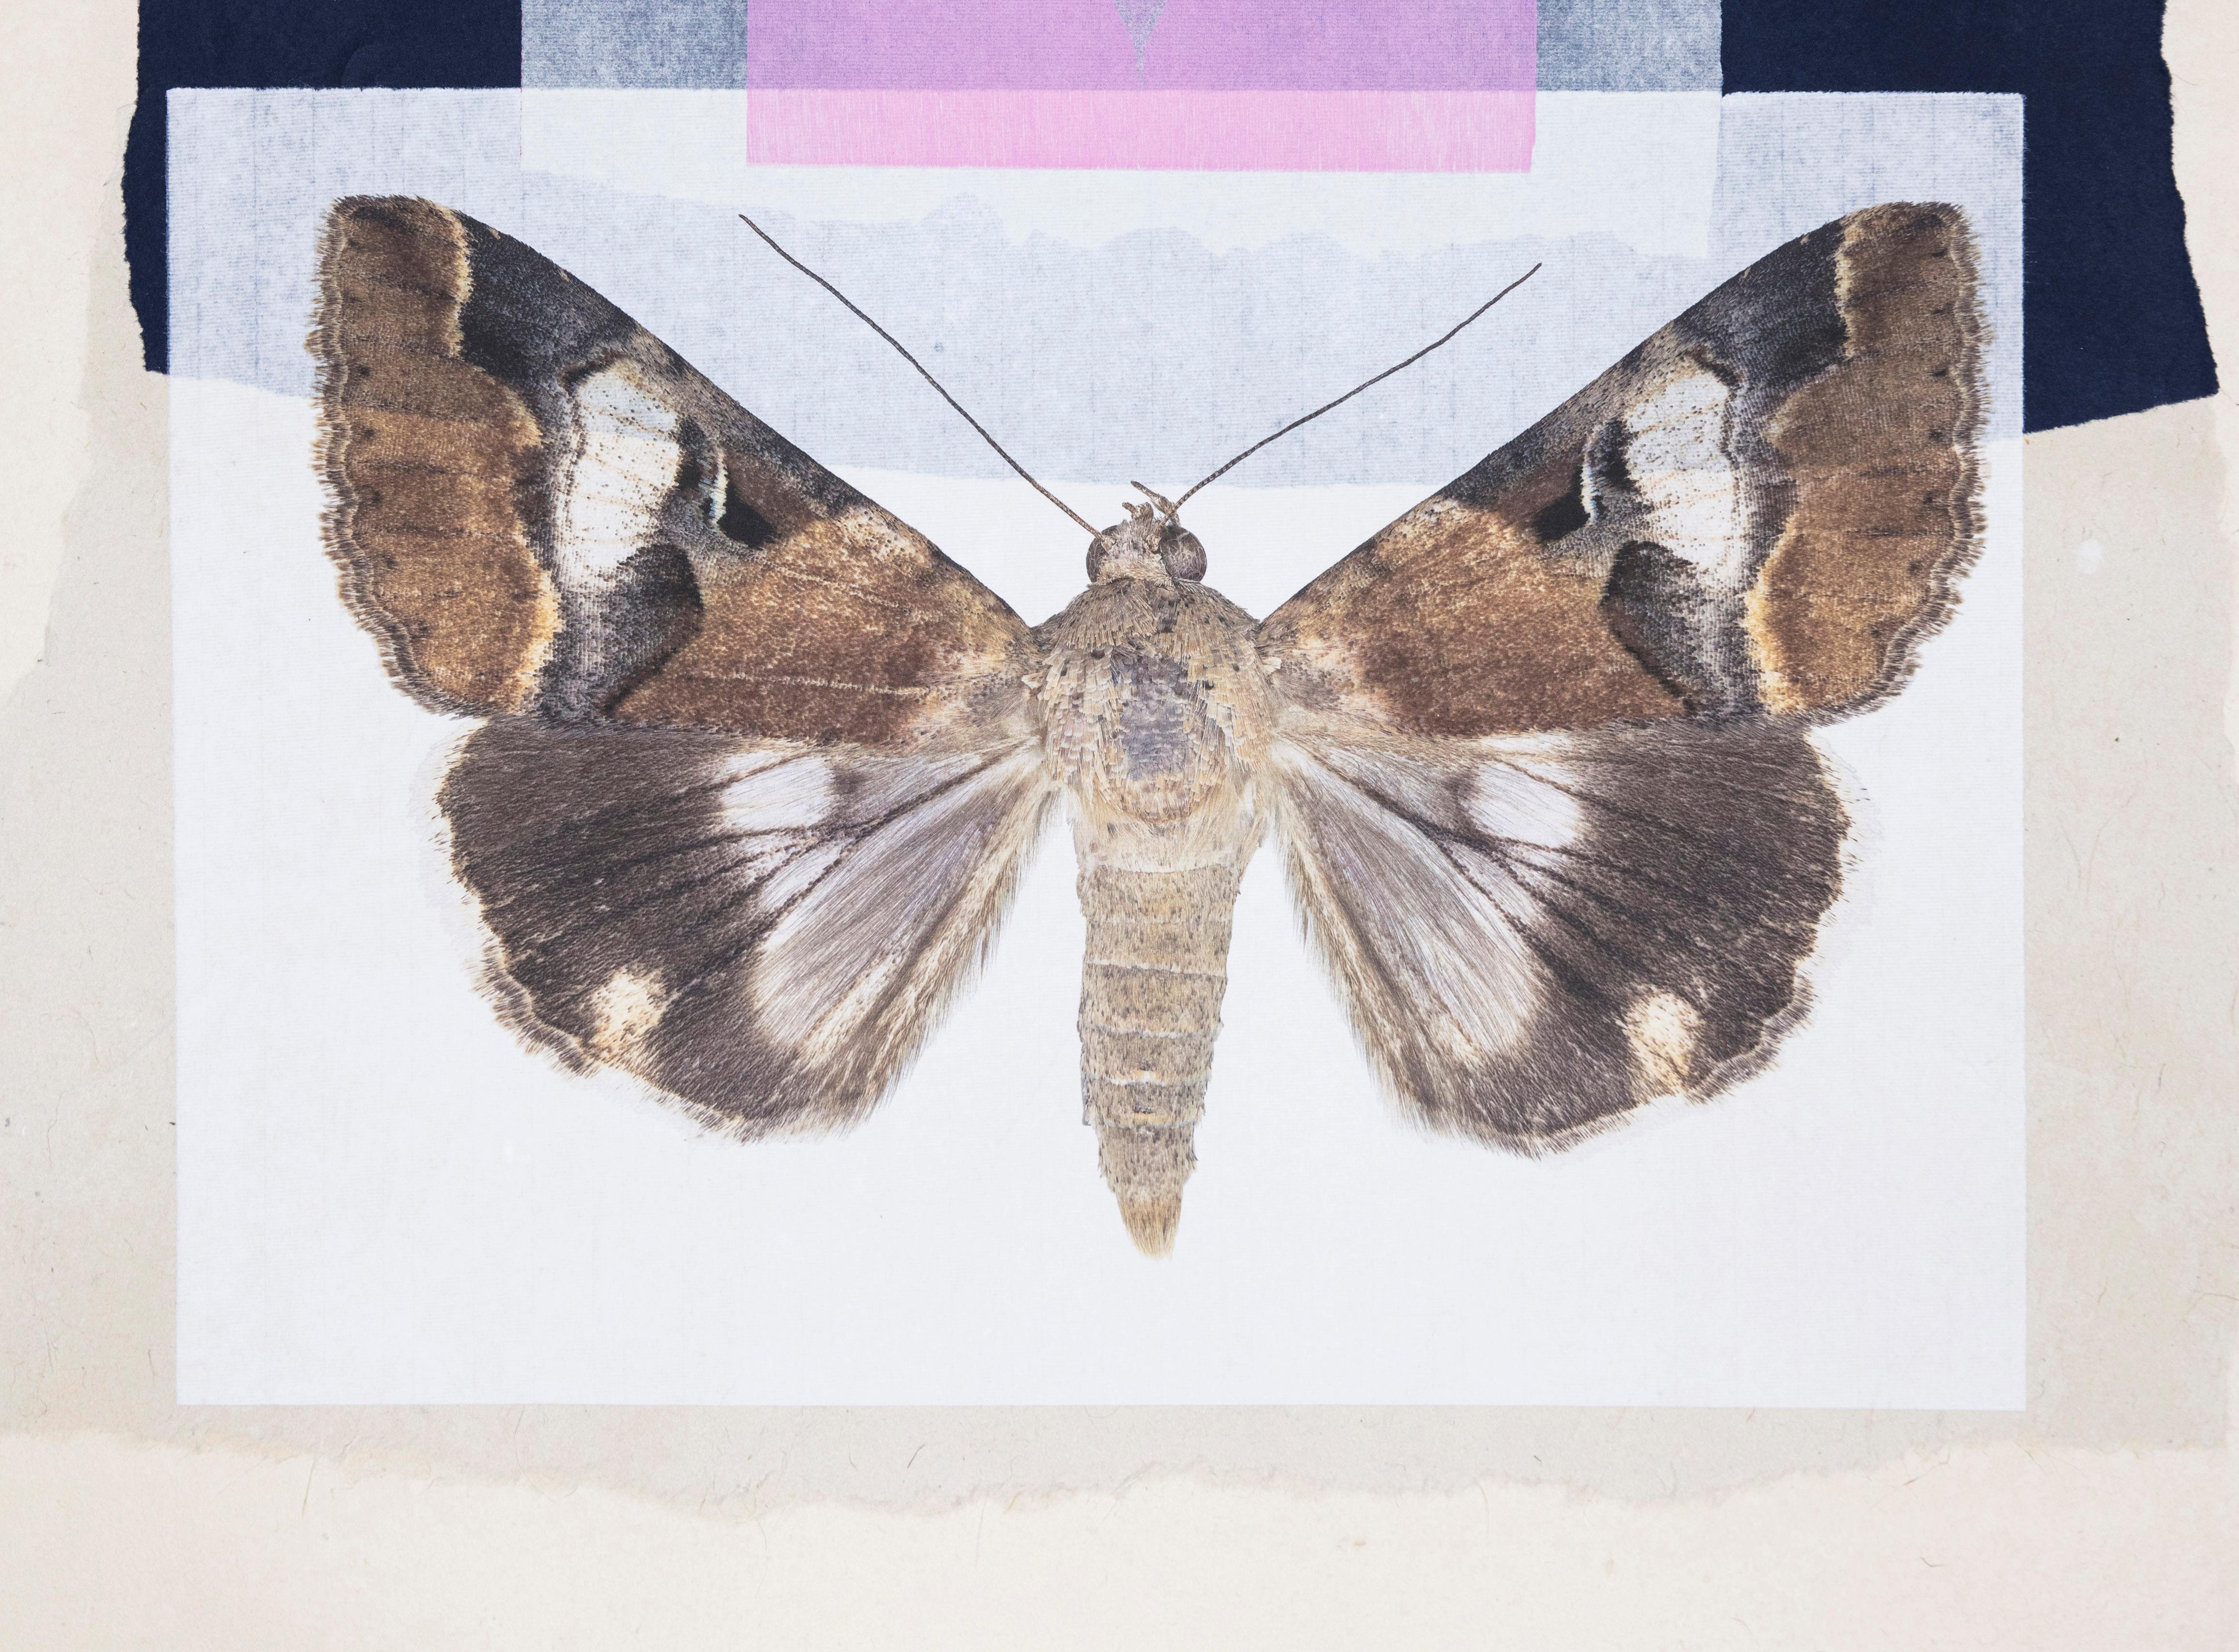 Monotype contemporain encadré d'un collage de motifs papillons et de motifs naturels roses et bleus - Print de Joseph Scheer